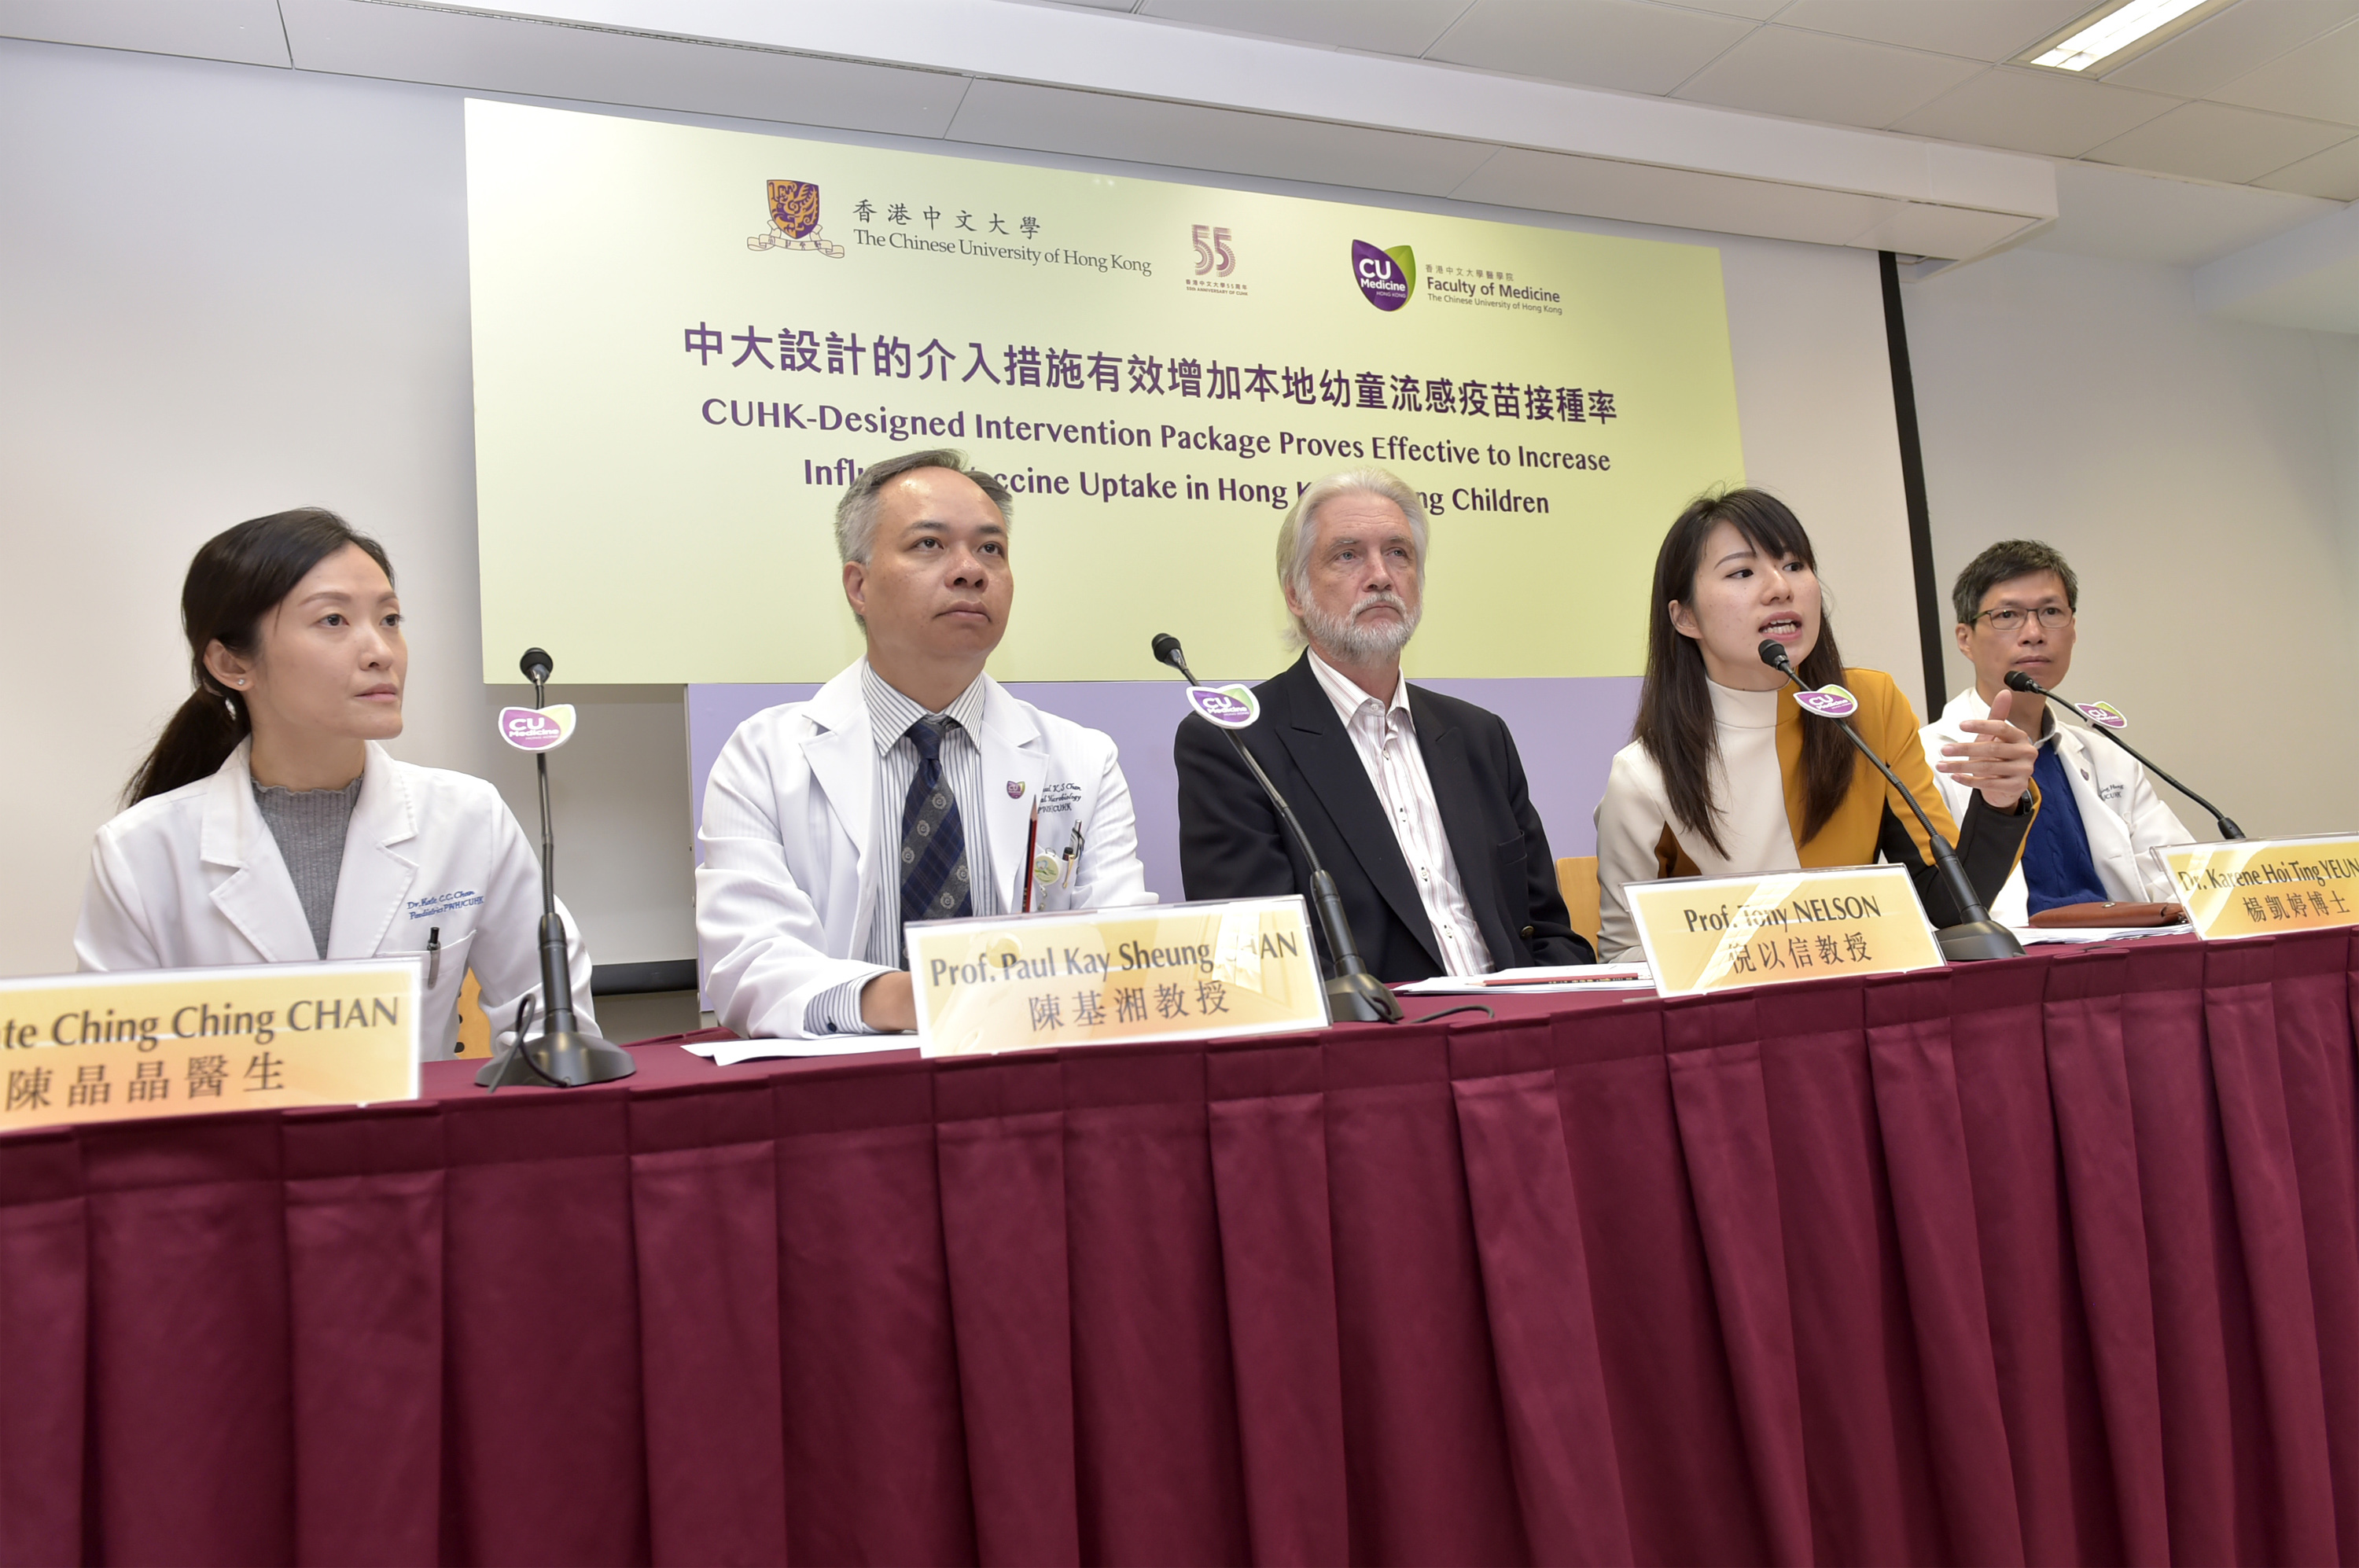 团队期望流感疫苗可被纳入香港的儿童免疫接种计划当中，以鼓励更多家长让子女接种疫苗。